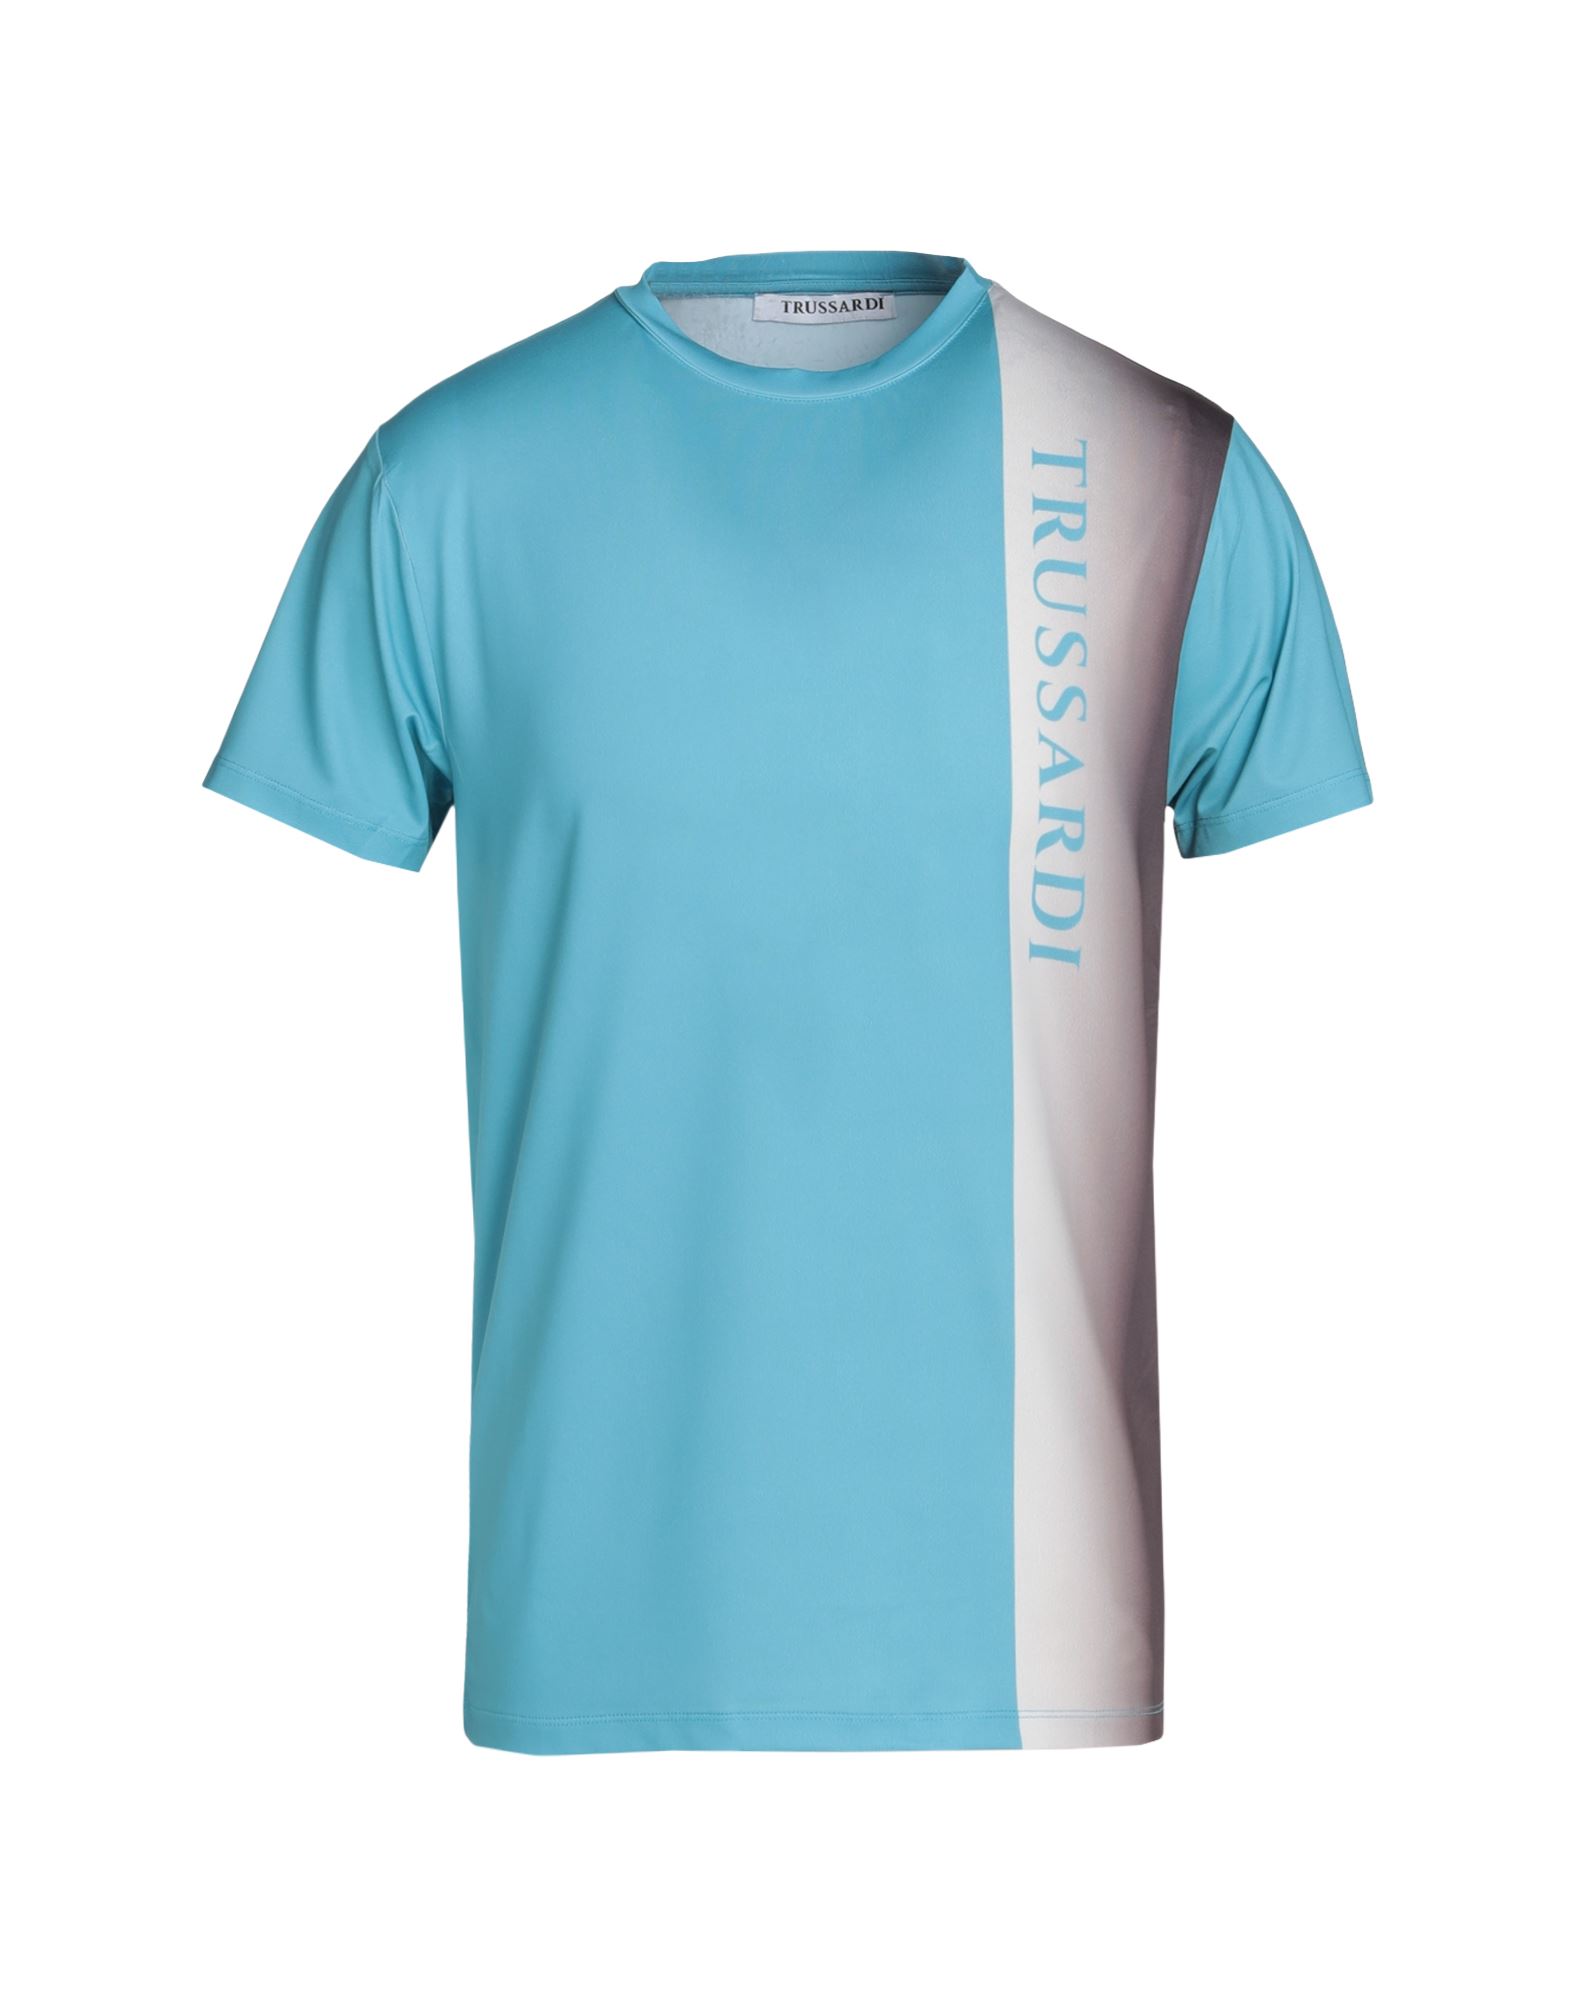 TRUSSARDI T-shirts Herren Blaugrau von TRUSSARDI